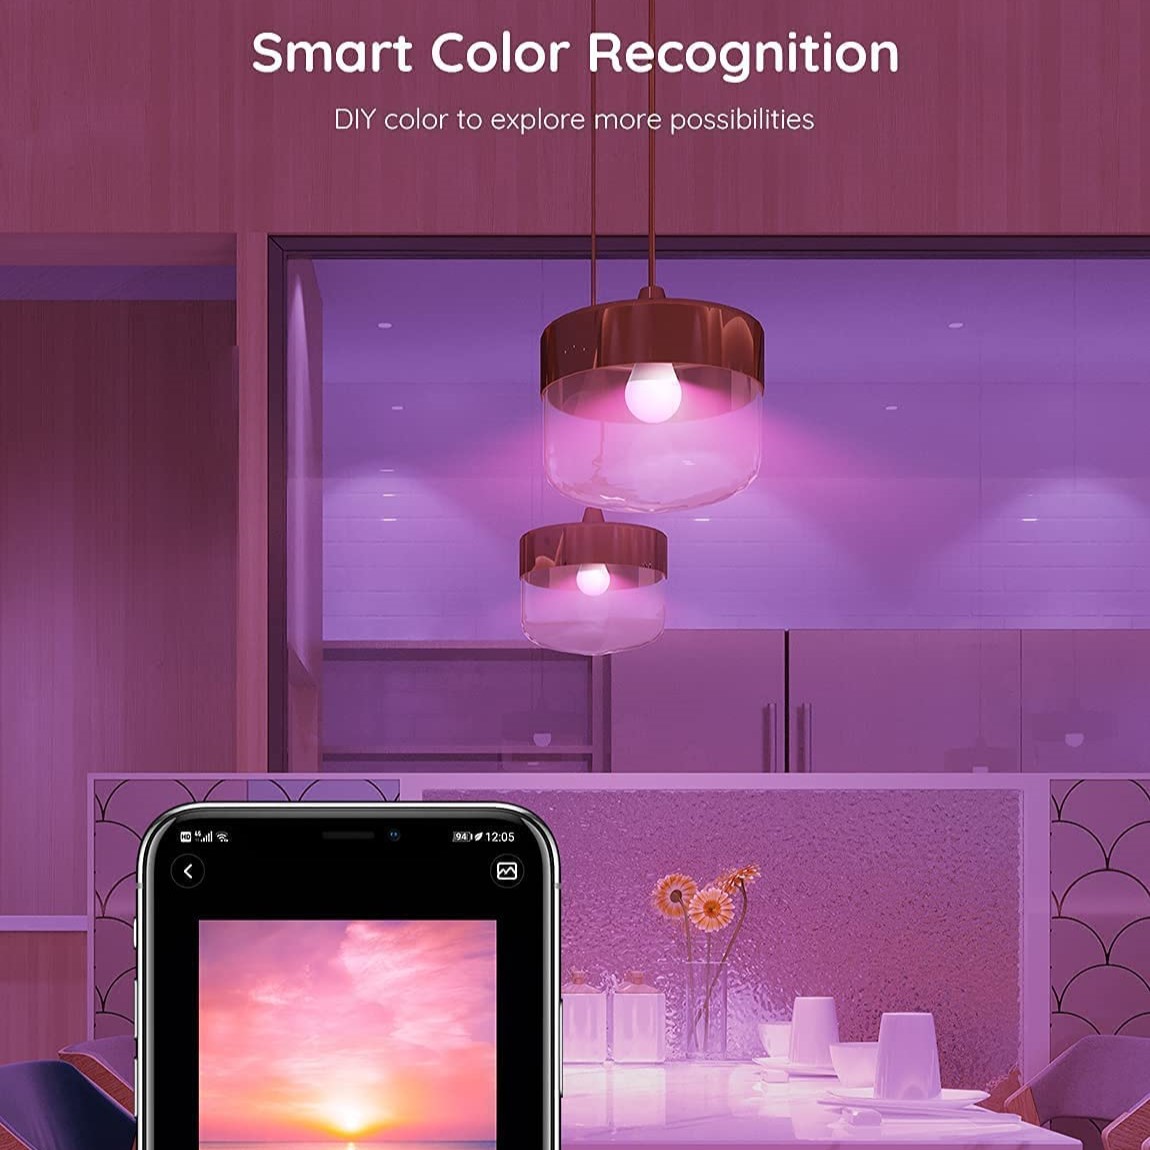 Đèn LED thông minh Govee Bluetooth LED Bulb H6001 | Bóng led 16 triệu màu, có hẹn giờ, điều khiển thông minh | Hàng chính hãng